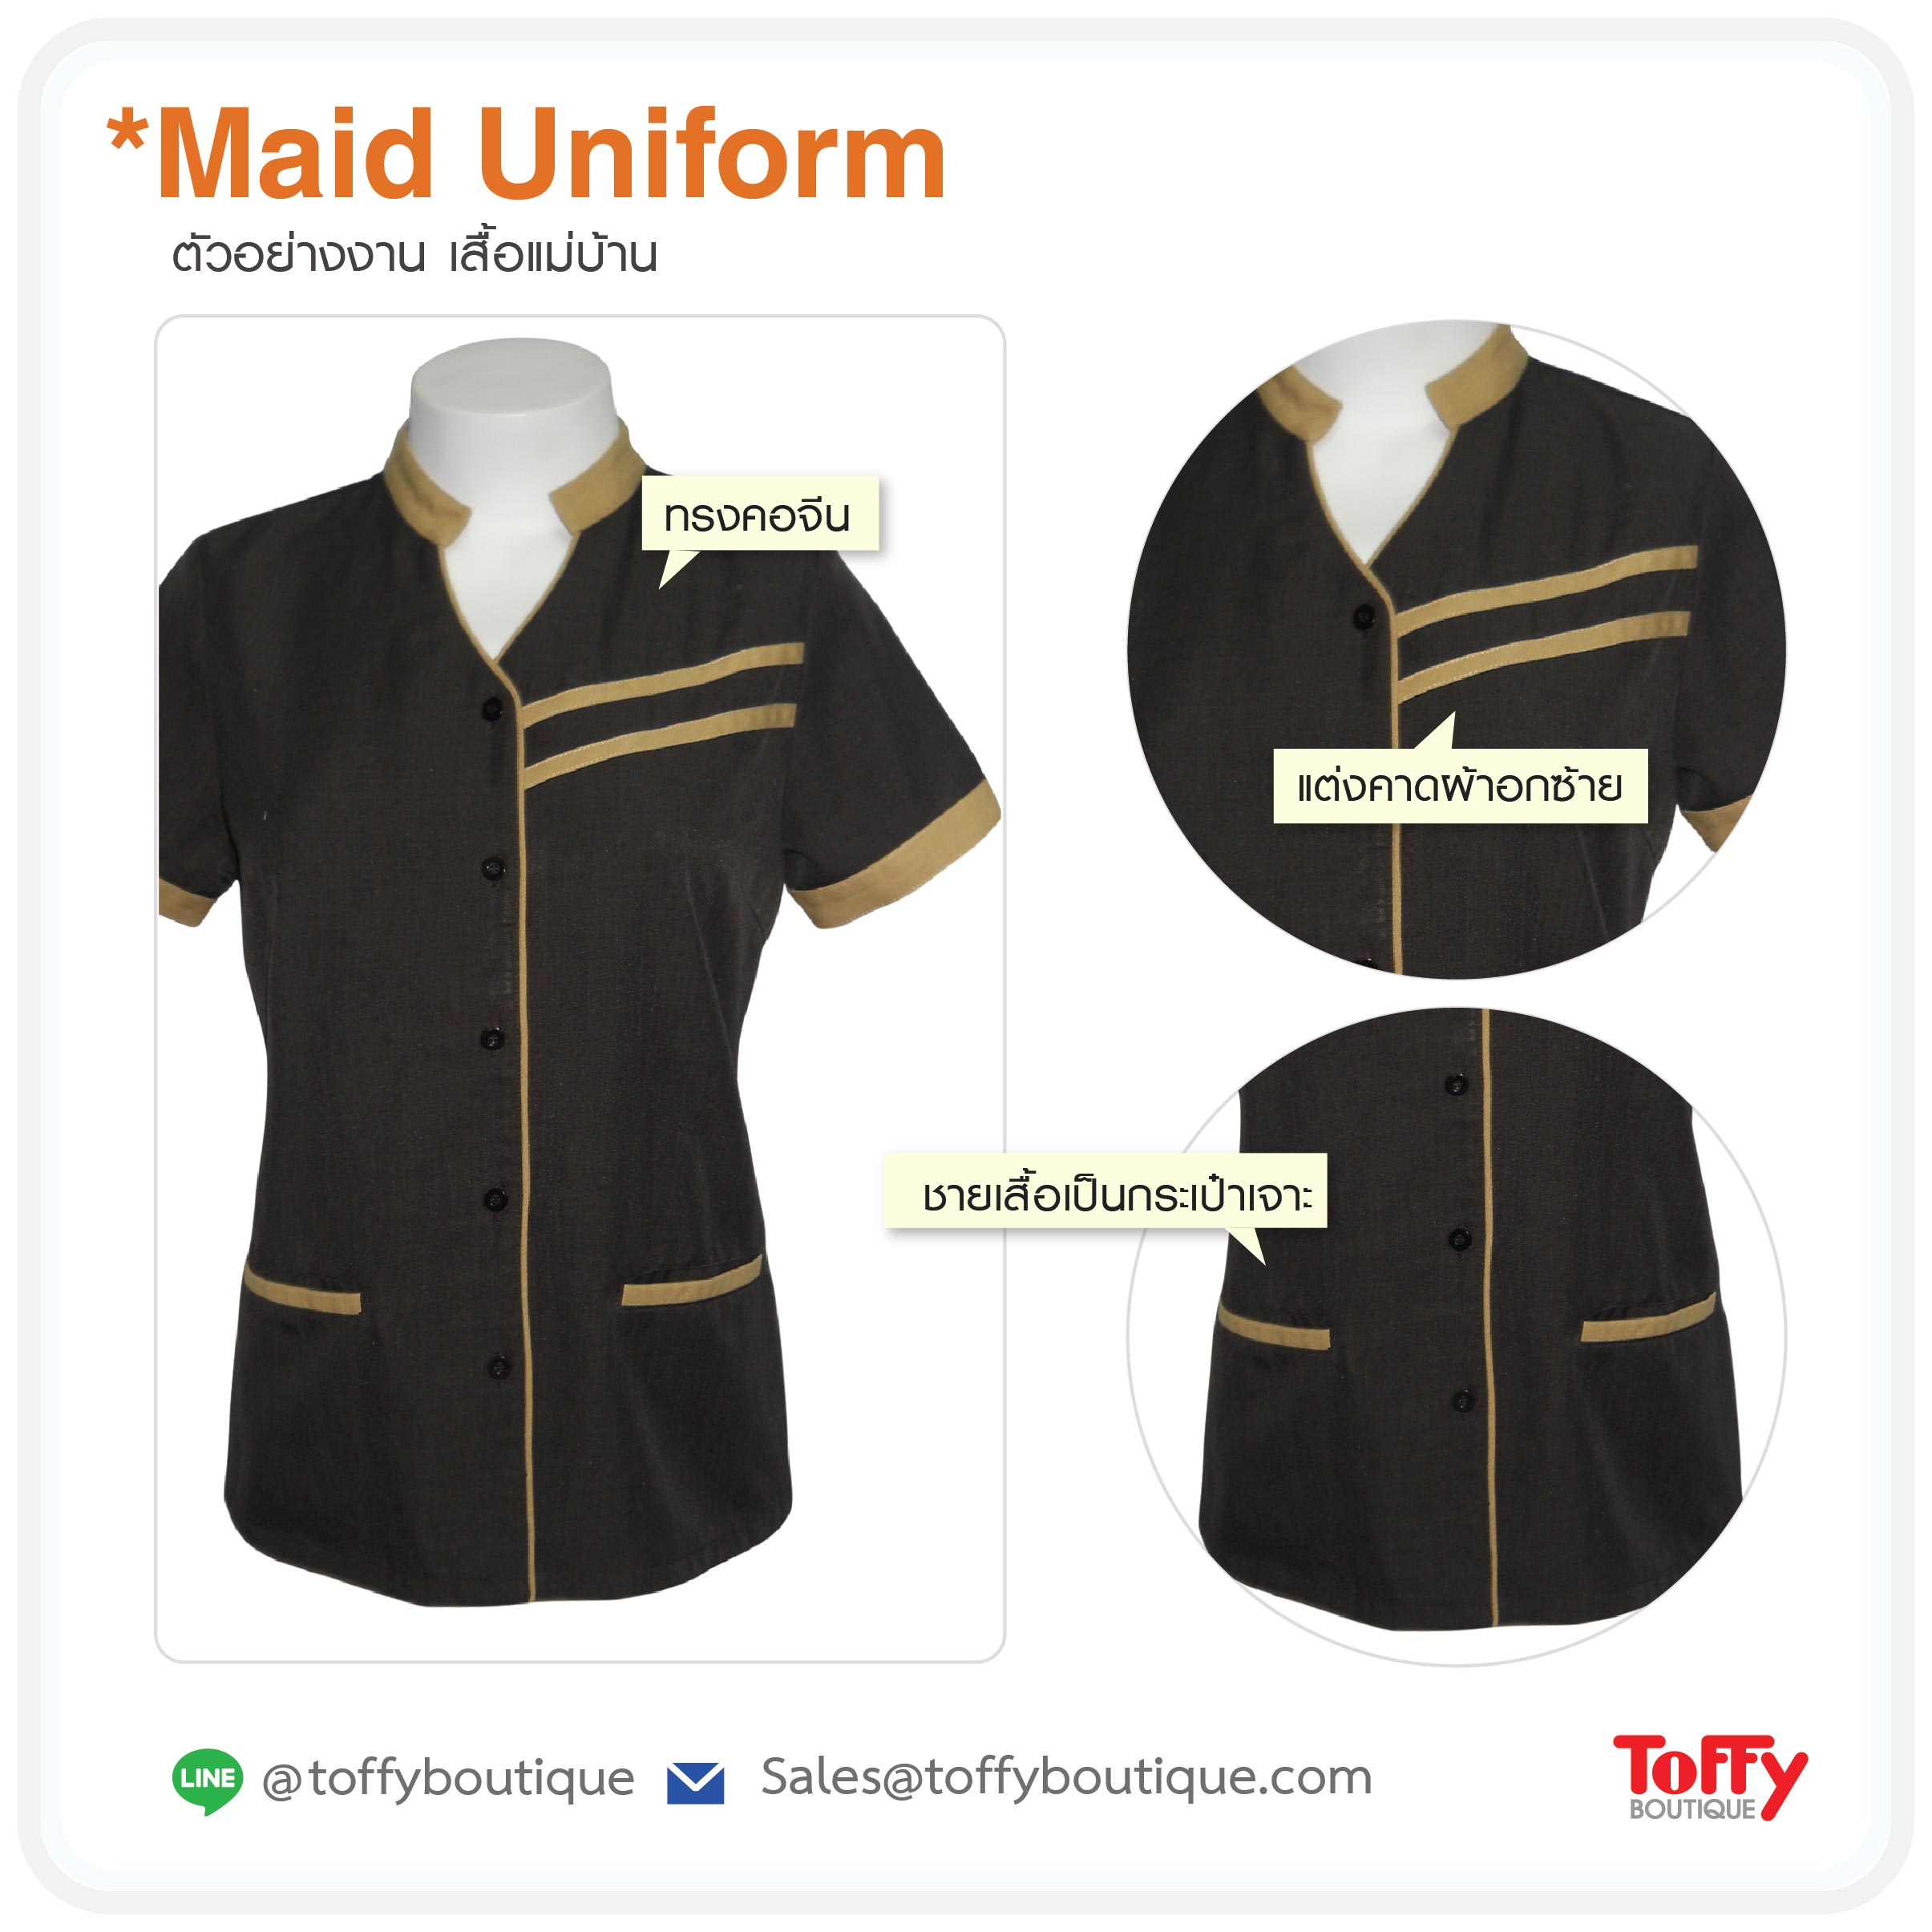 ยูนิฟอร์มแม่บ้าน Maid Uniform